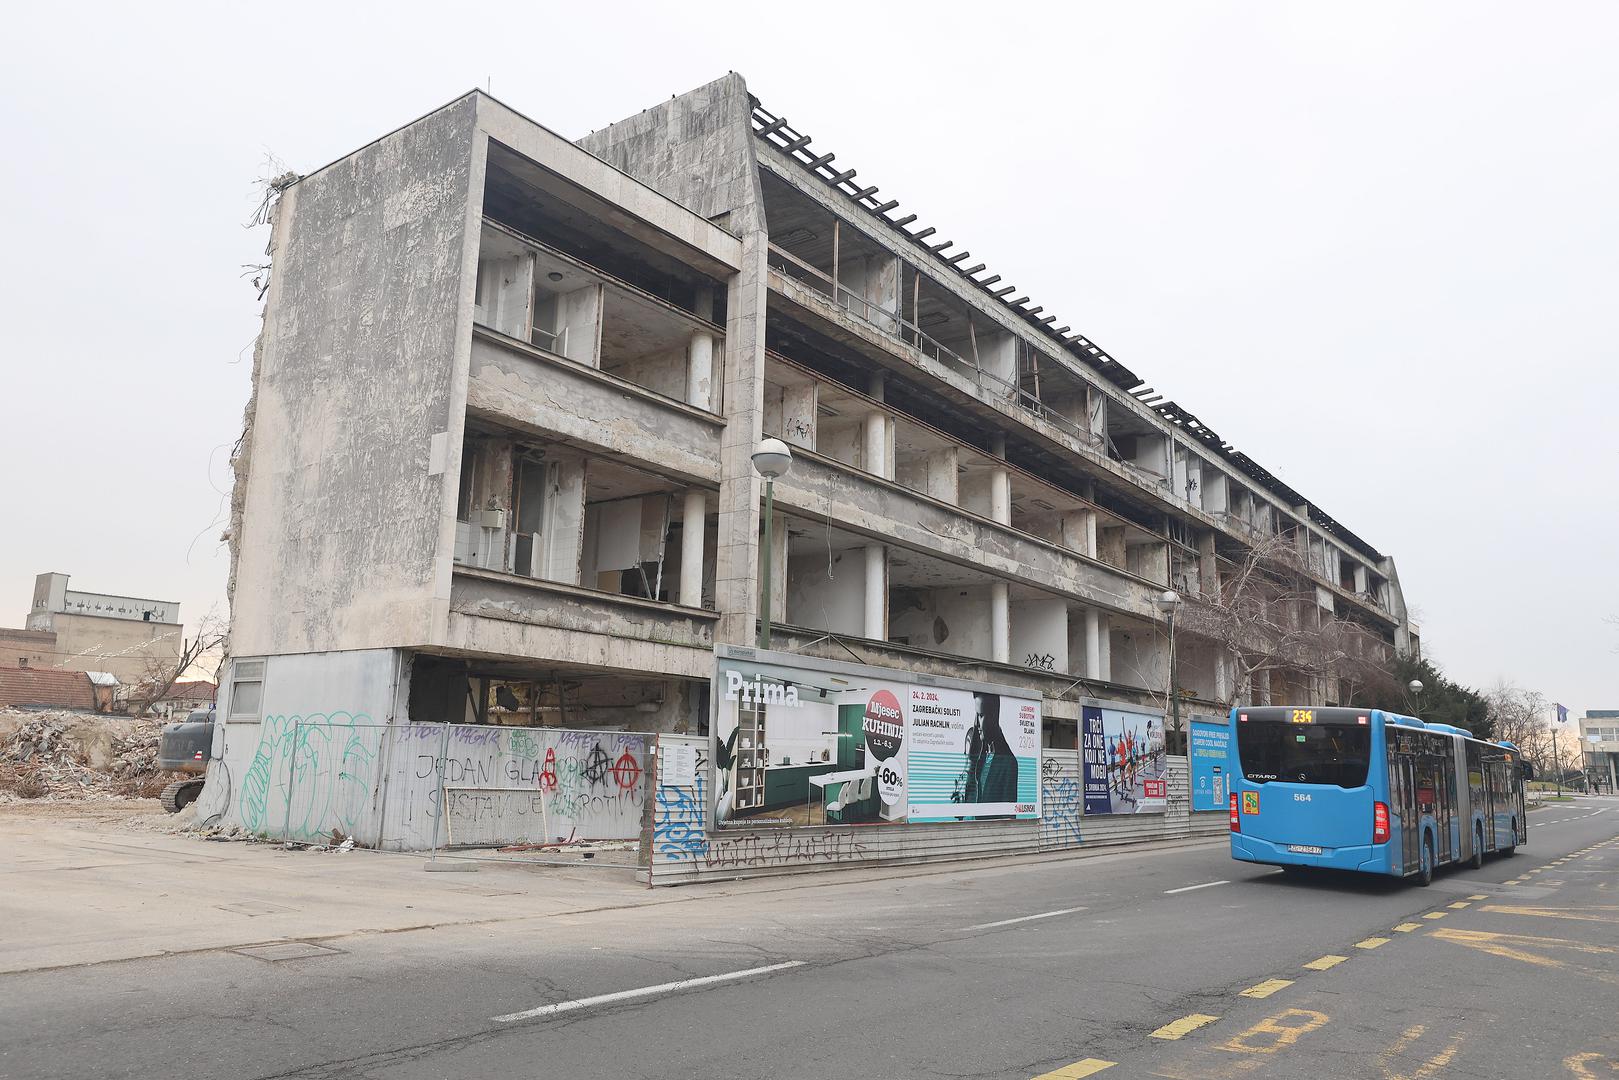 Teče deveti mjesec od početka radova, no rušenje stare zgrade Zagrebačke banke u Paromlinskoj jos nije završeno. Za odraditi je jos ostalo zapadno krilo zgrade, dok je većina ostalog srušena